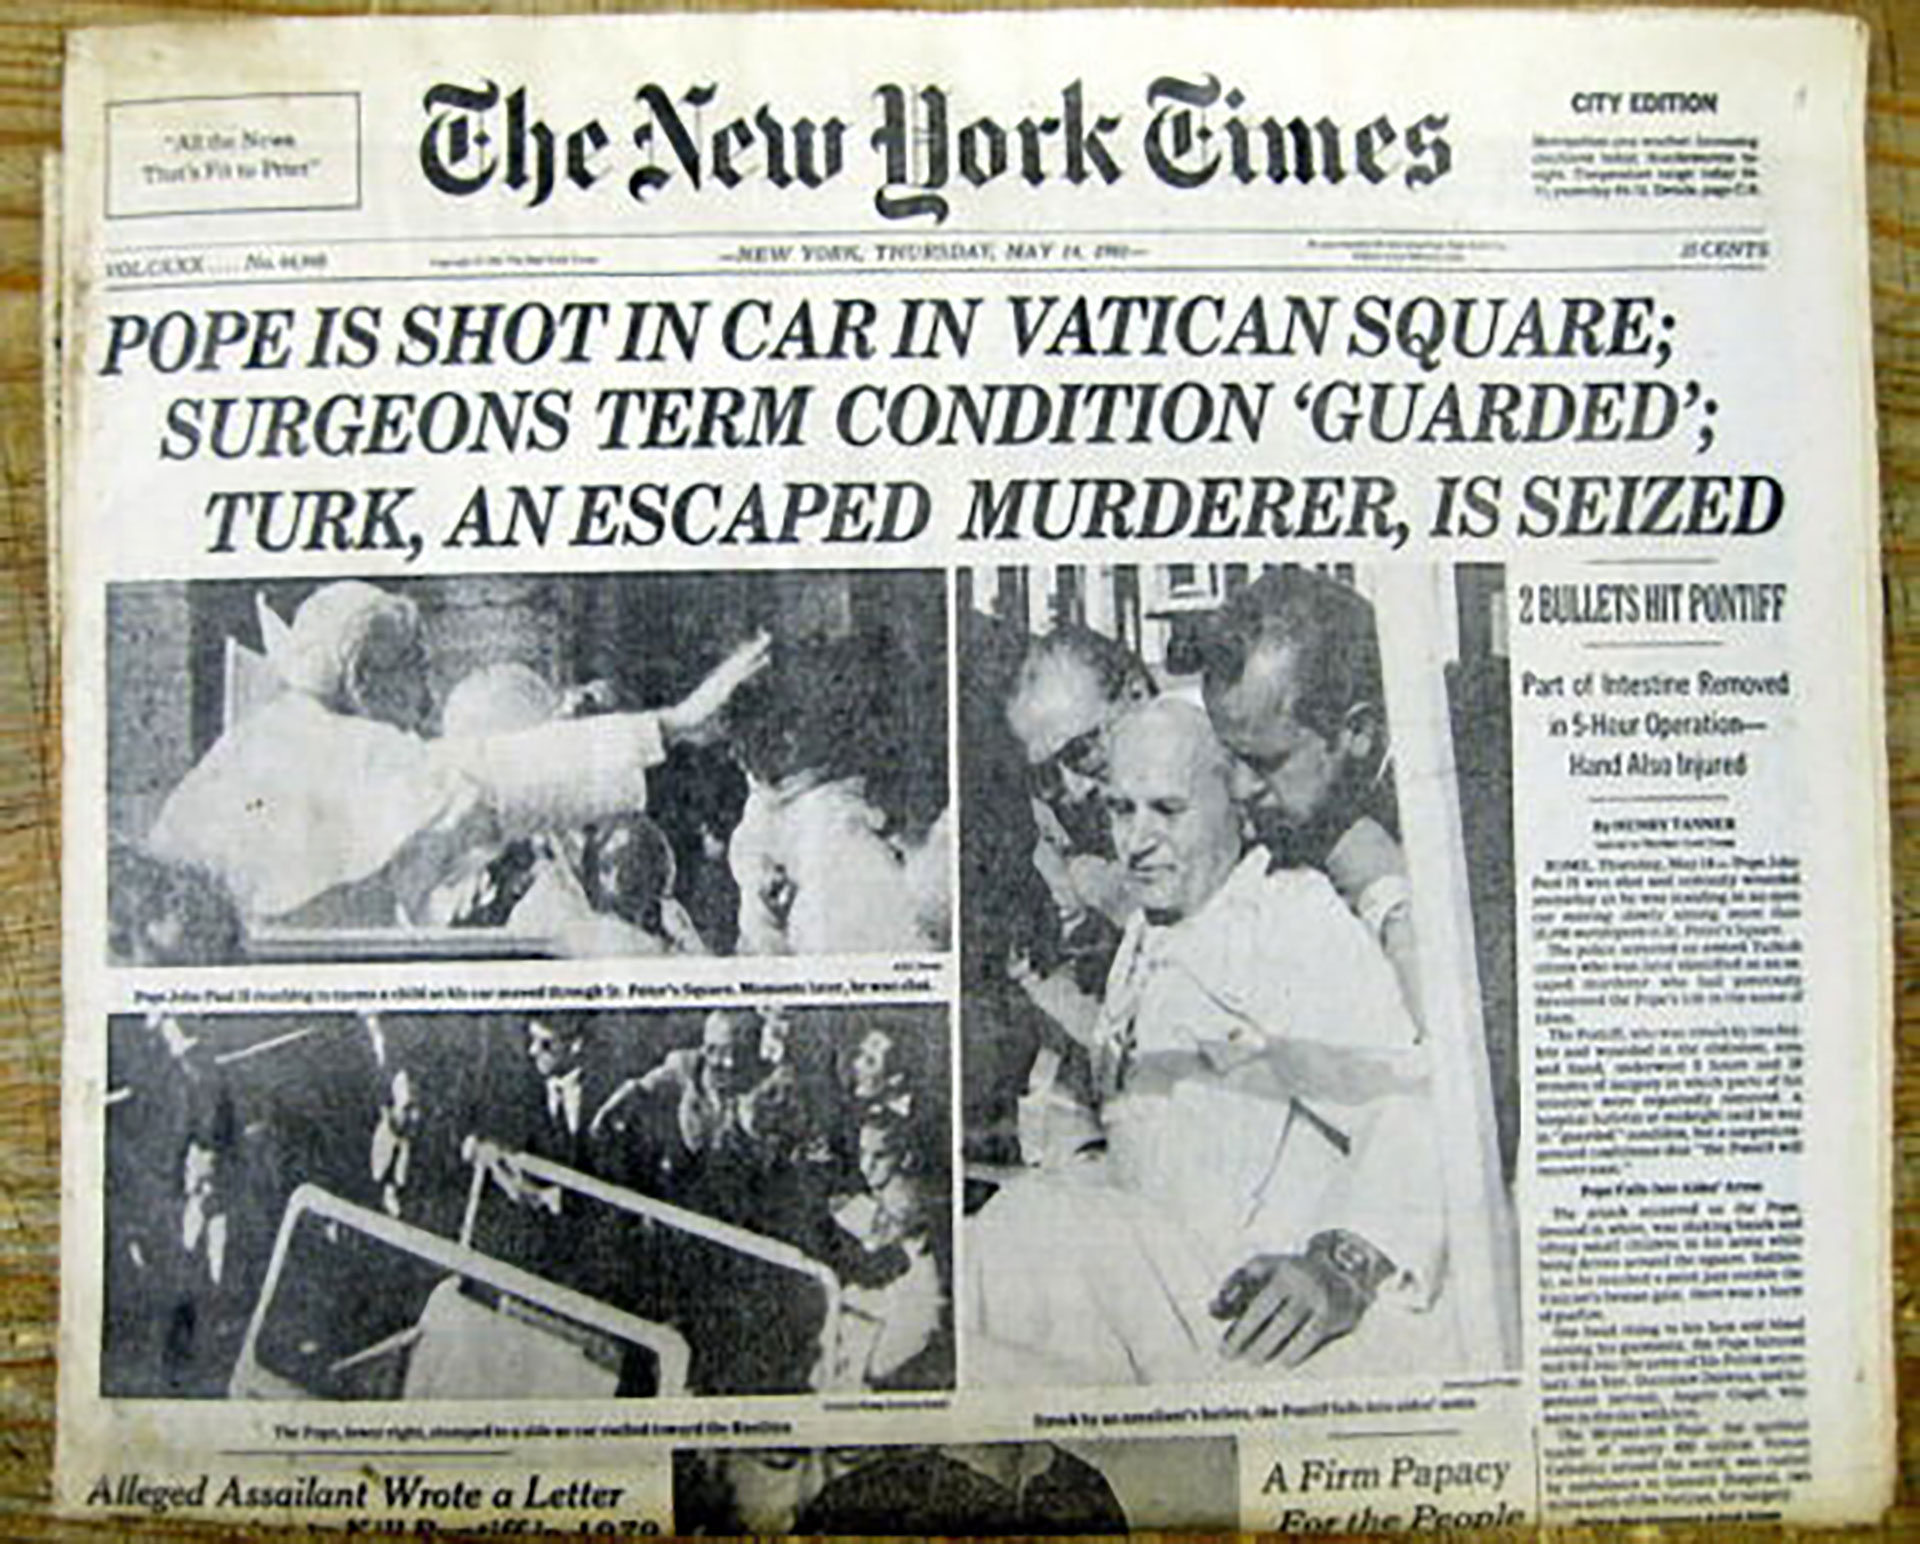 La noticia provocó gran conmoción mundial y llegó a la tapa de los diarios. La incertidumbre por la salud del Papa duró varios días